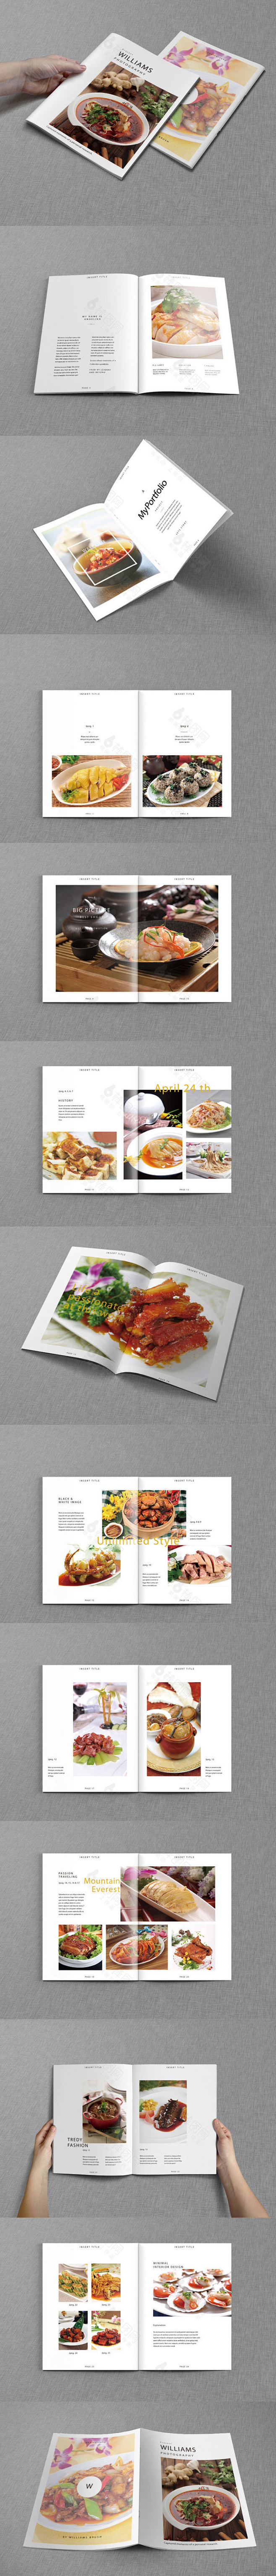 餐厅画册 美食画册 餐饮文化 酒店画册 ...